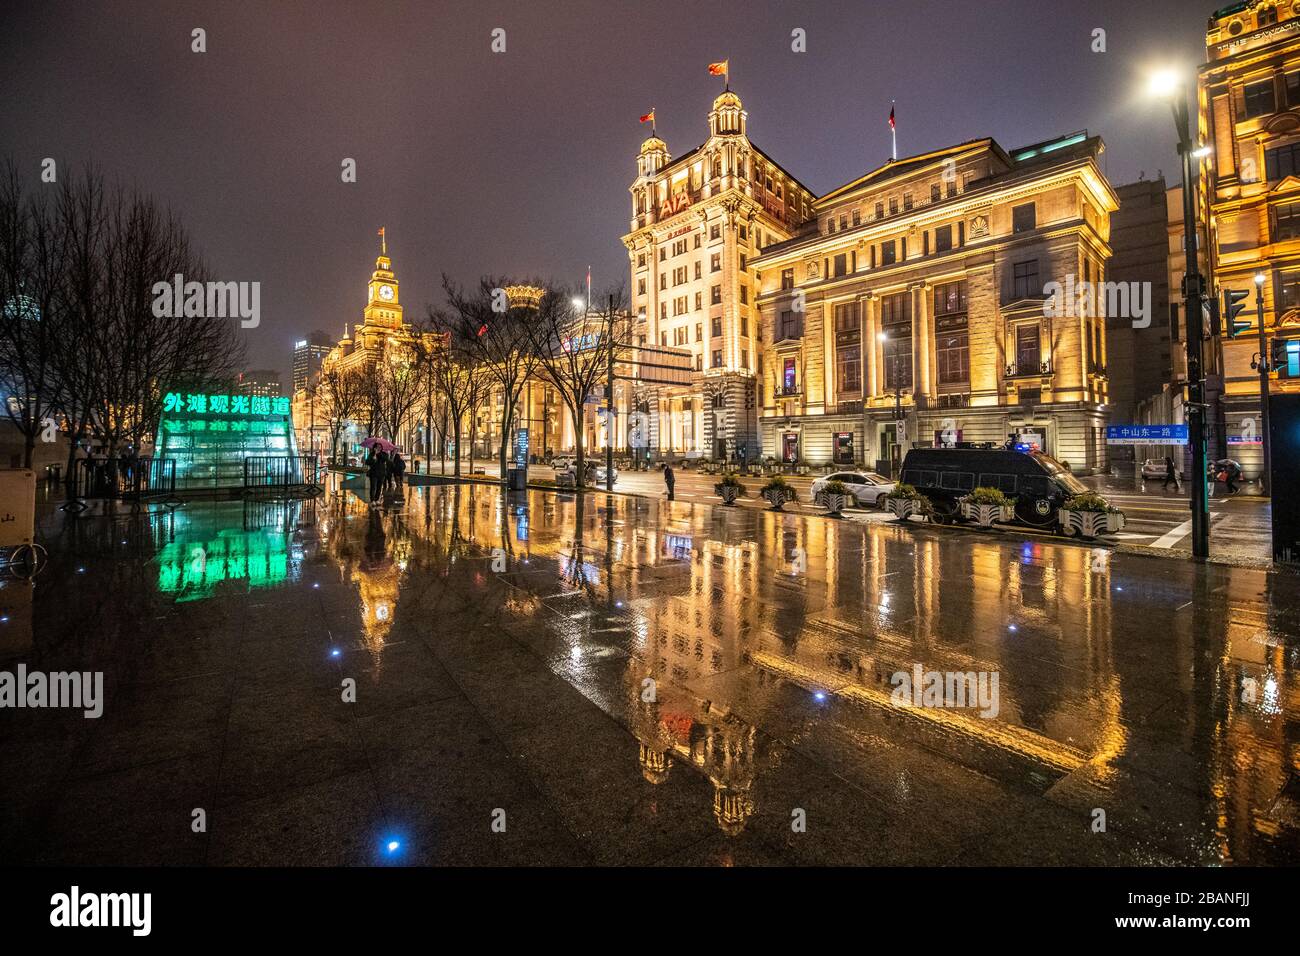 Les lumières lumineuses du Bund illuminent les environs , Shanghai, Chine Banque D'Images